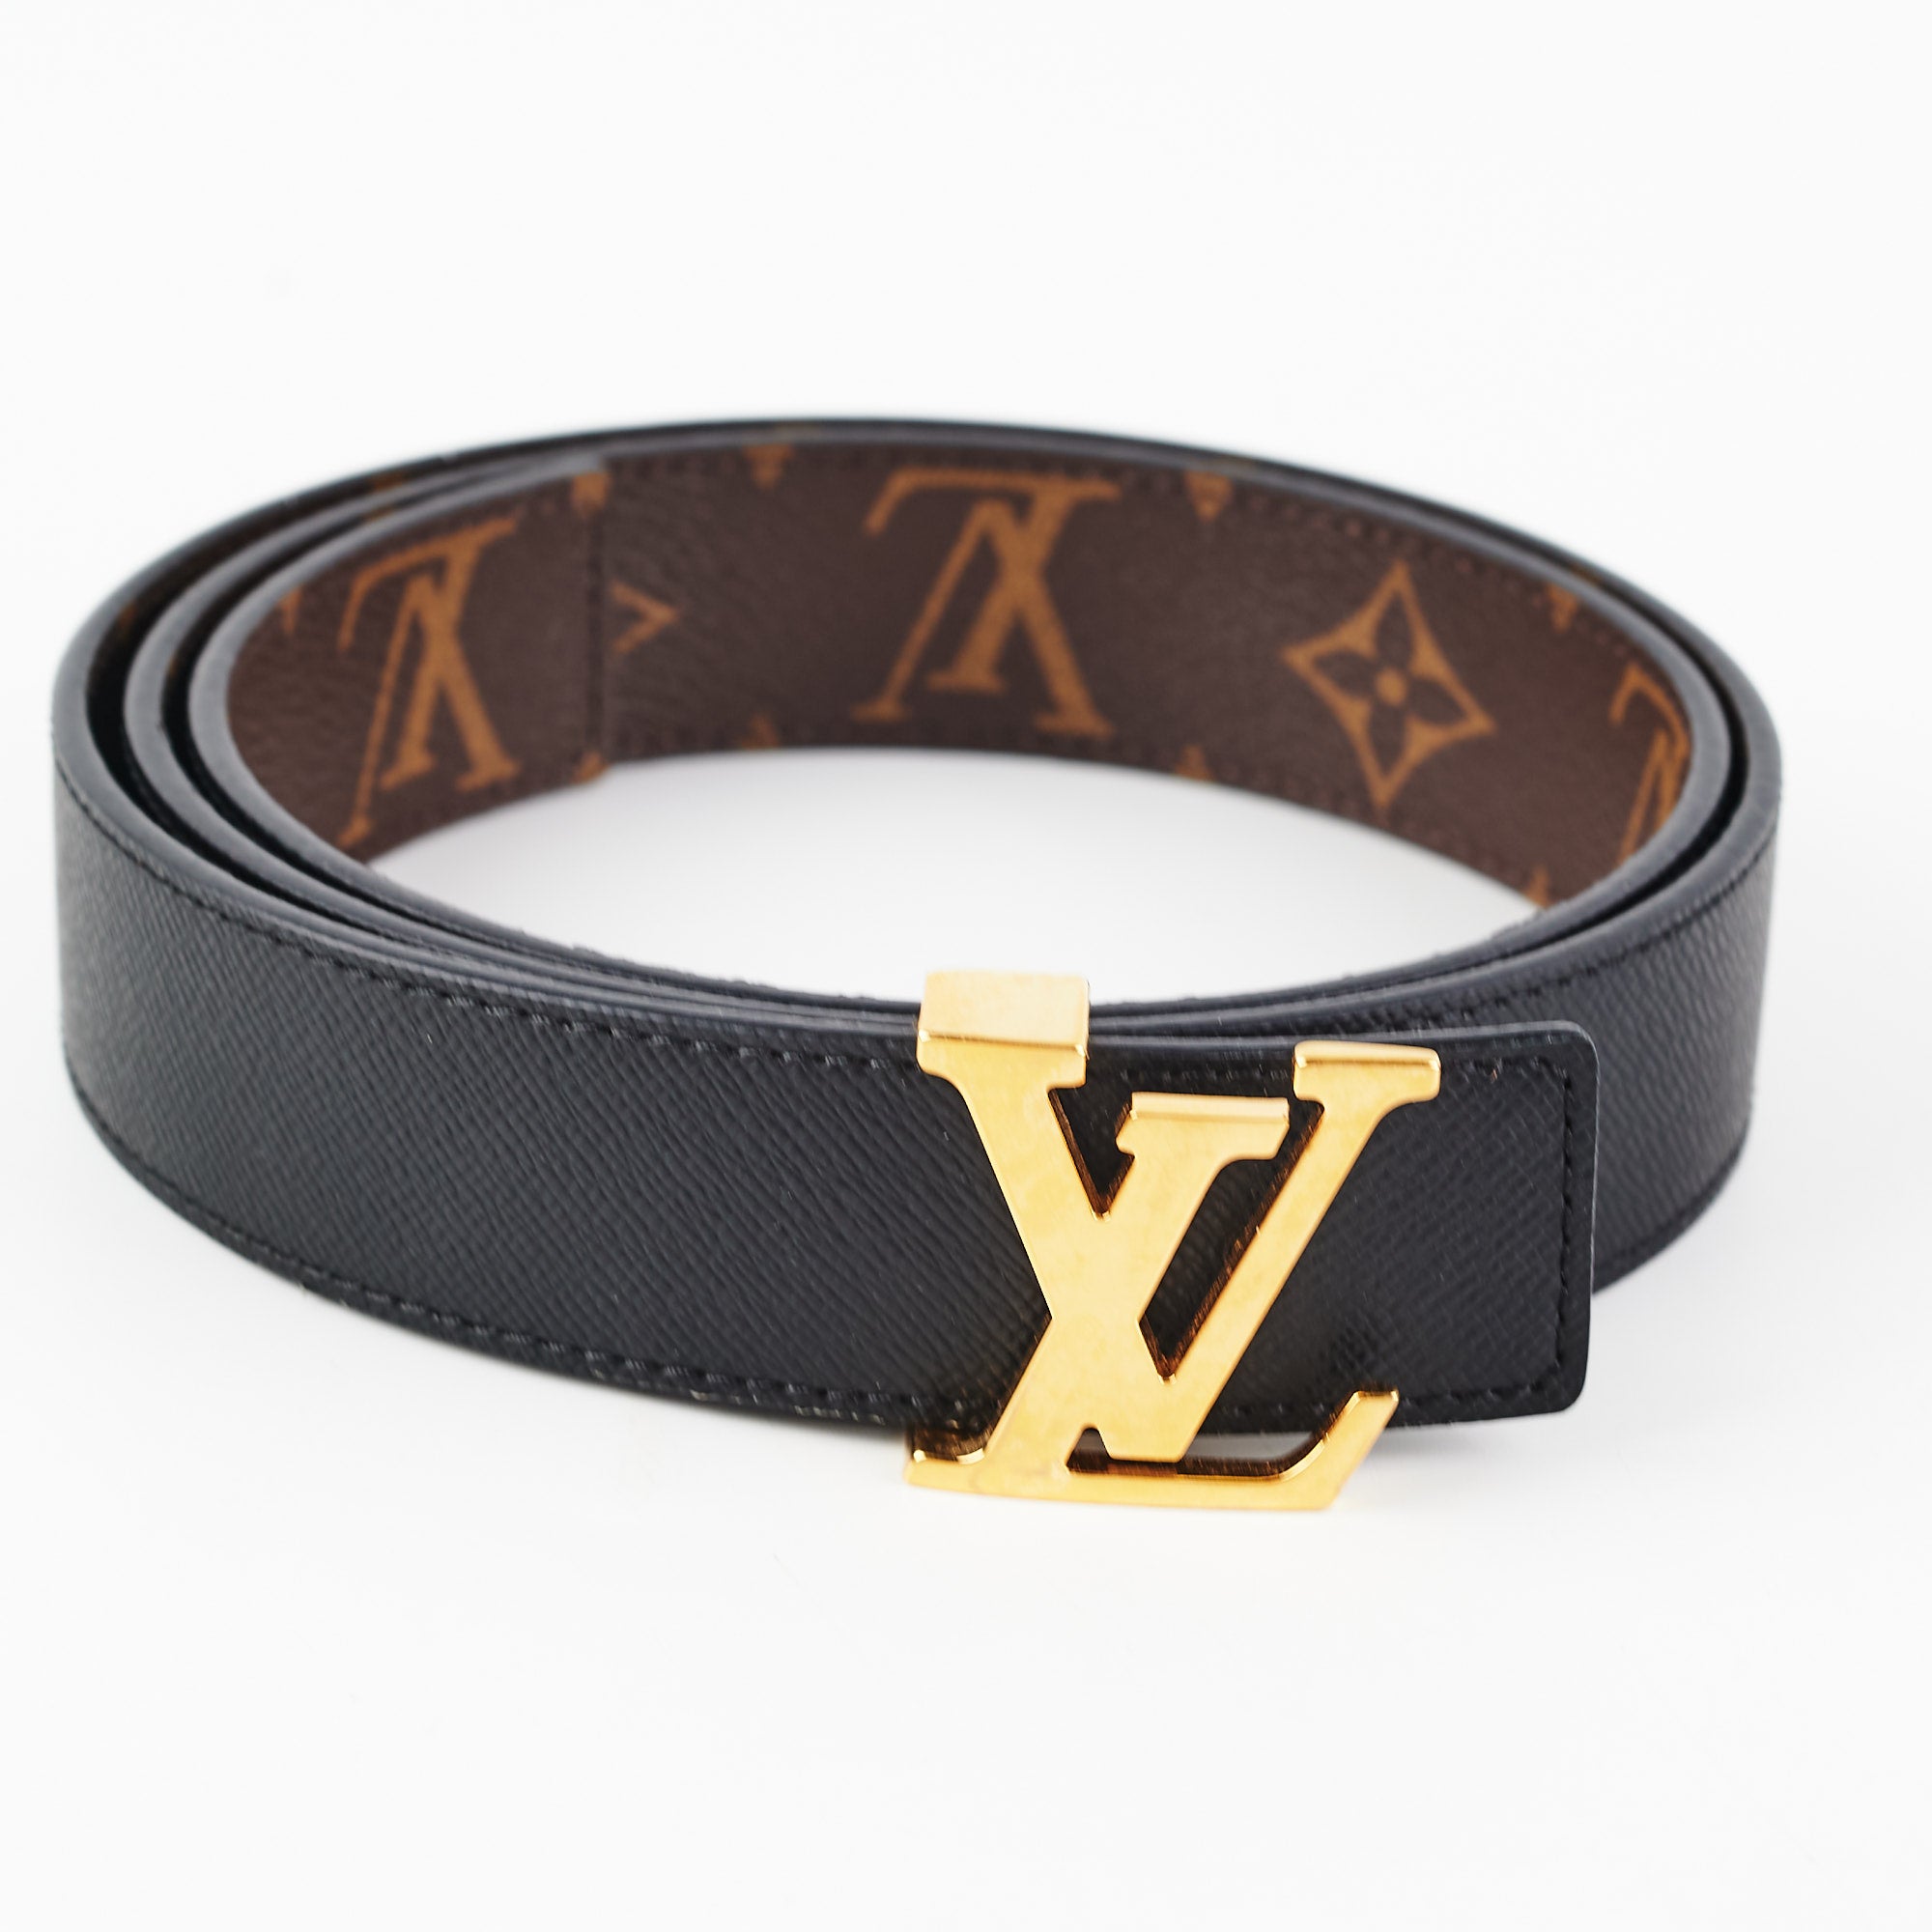 Louis Vuitton Reversible Belt Monogram/Black 85 - THE PURSE AFFAIR